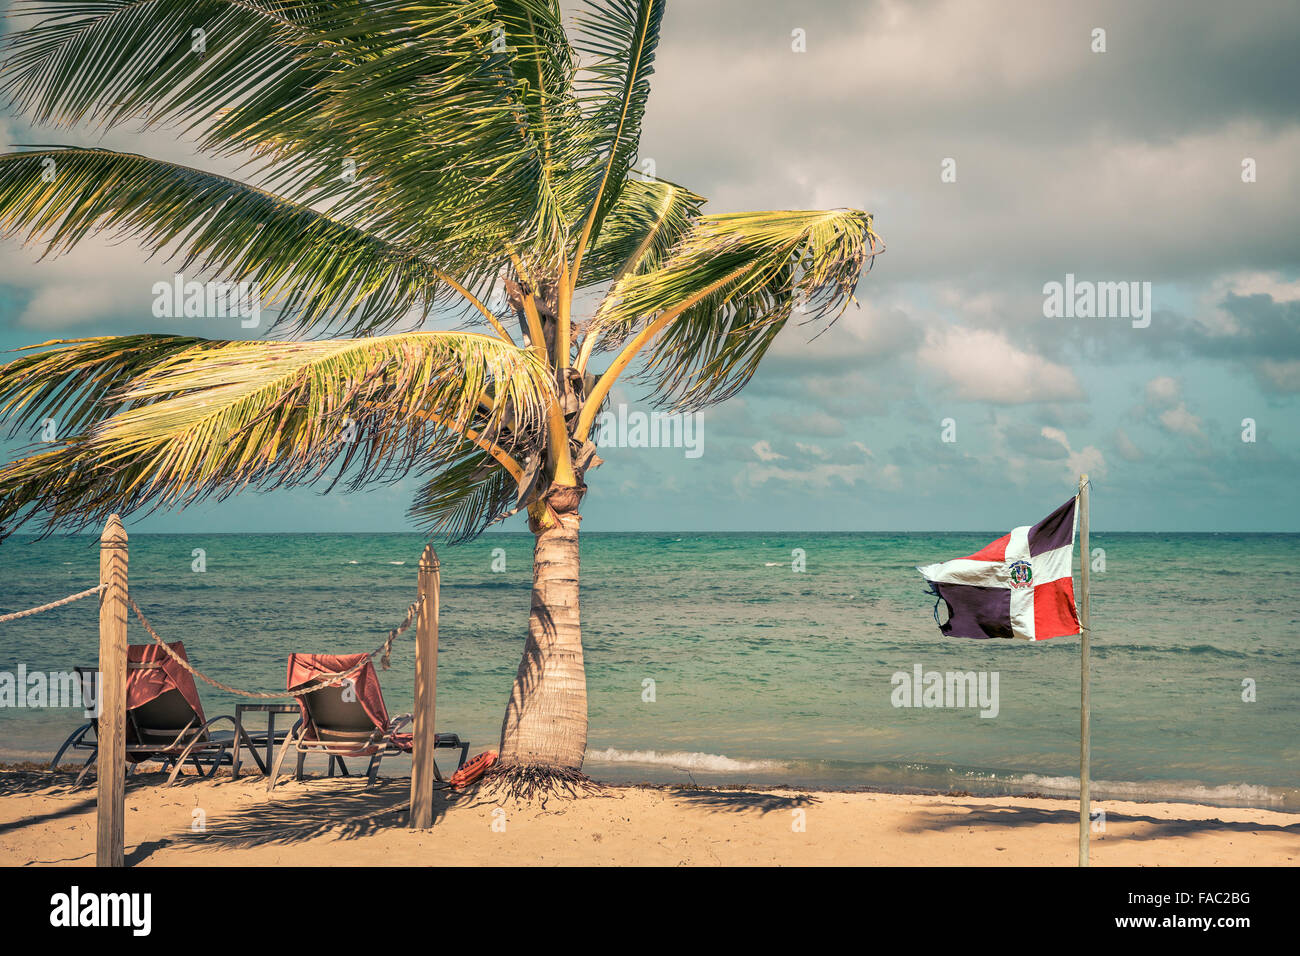 Bandiera della Repubblica Dominicana presso la spiaggia e il mare dei Caraibi in background Foto Stock